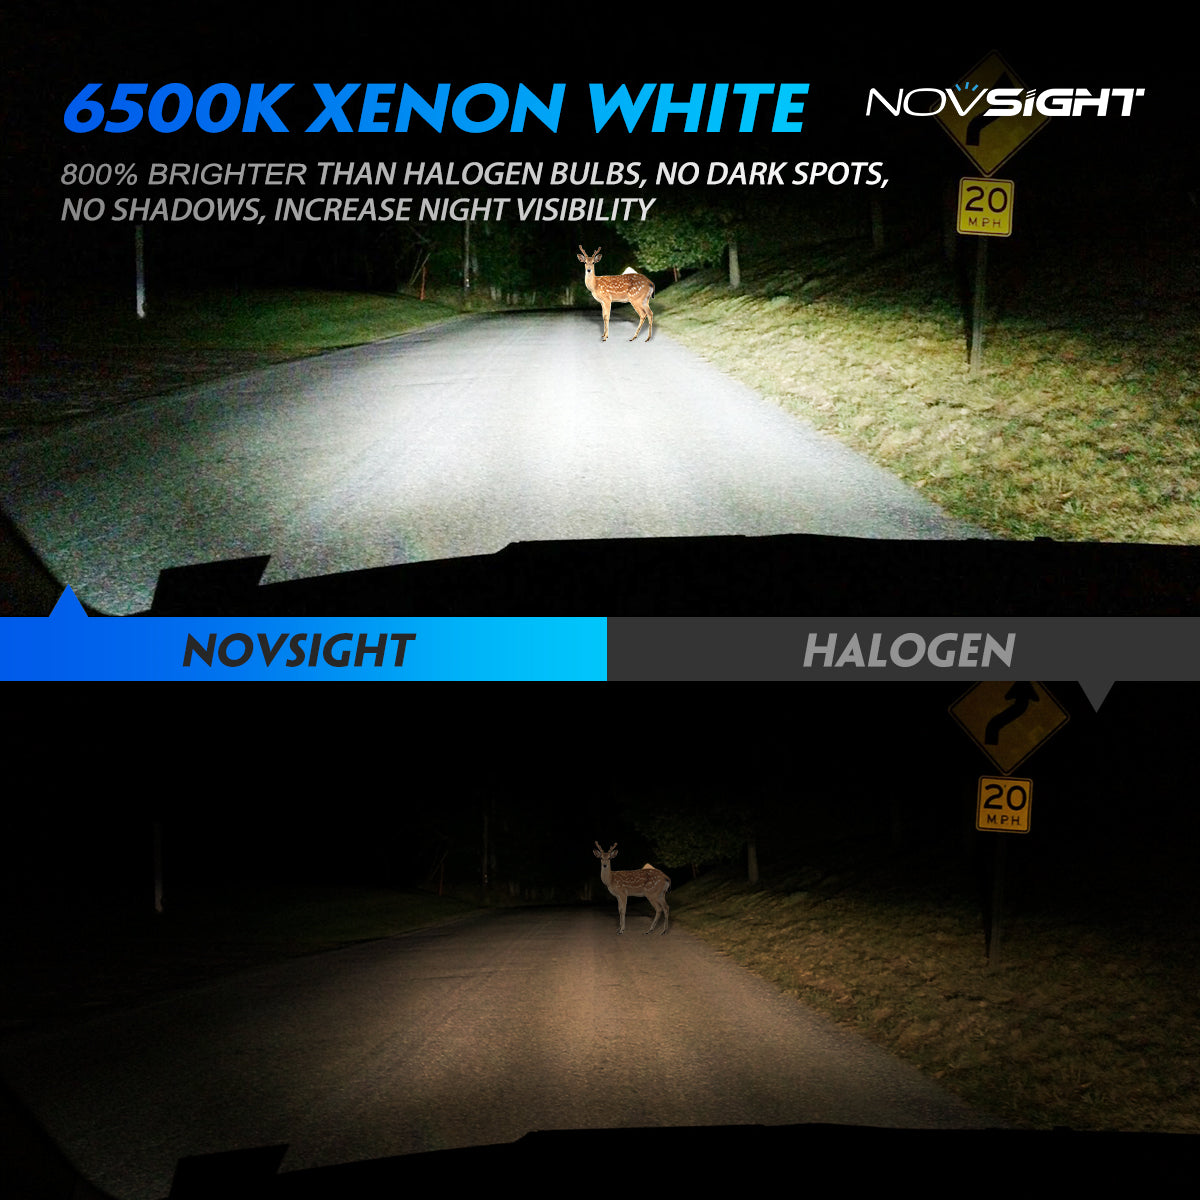 Novsight 60W 10000LM H7 LED Phare de voiture Ampoule Headlight